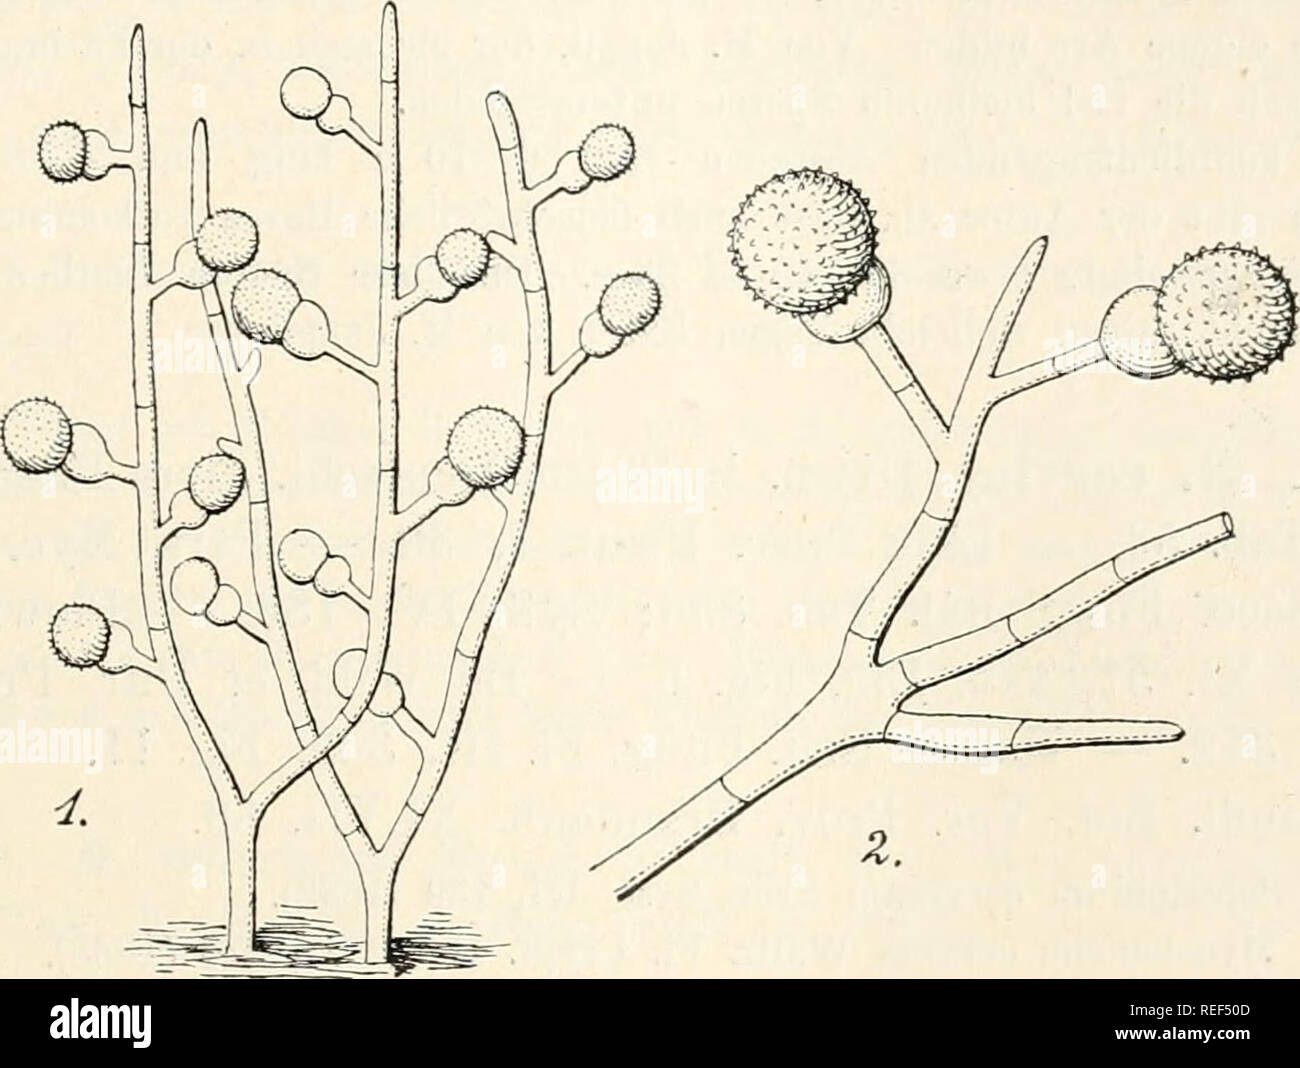 . Dr. L. Rabenhorst's Kryptogamen-Flora von Deutschland, Oesterreich und der Schweiz. Cryptogams -- Germany; Cryptogams -- Austria; Cryptogams -- Switzerland. 385 Syn. Puccinia mycogone Corda Icon. Fung. I, 6 (1837), Fig. 99. Exs. Sacc. Myc. venet. 578; Klotzscb Herb. myc. 686; Fuckel Fungi rhen. 142; Kouraeguere Fungi gall. 3191, 3794; D. Sacc. Myc. ital. 579. Rasen ausgebreitet, sammetartig, rosarot, aus hyalinen, verzweigten, septierten Hyphen verwebt. Konidientragende Hyphen als kurze, einfache oder verzweigte Seitenzweige gebildet. Konidien end-. 1. Mycogone rosea Link. Konidientragende H Stock Photo